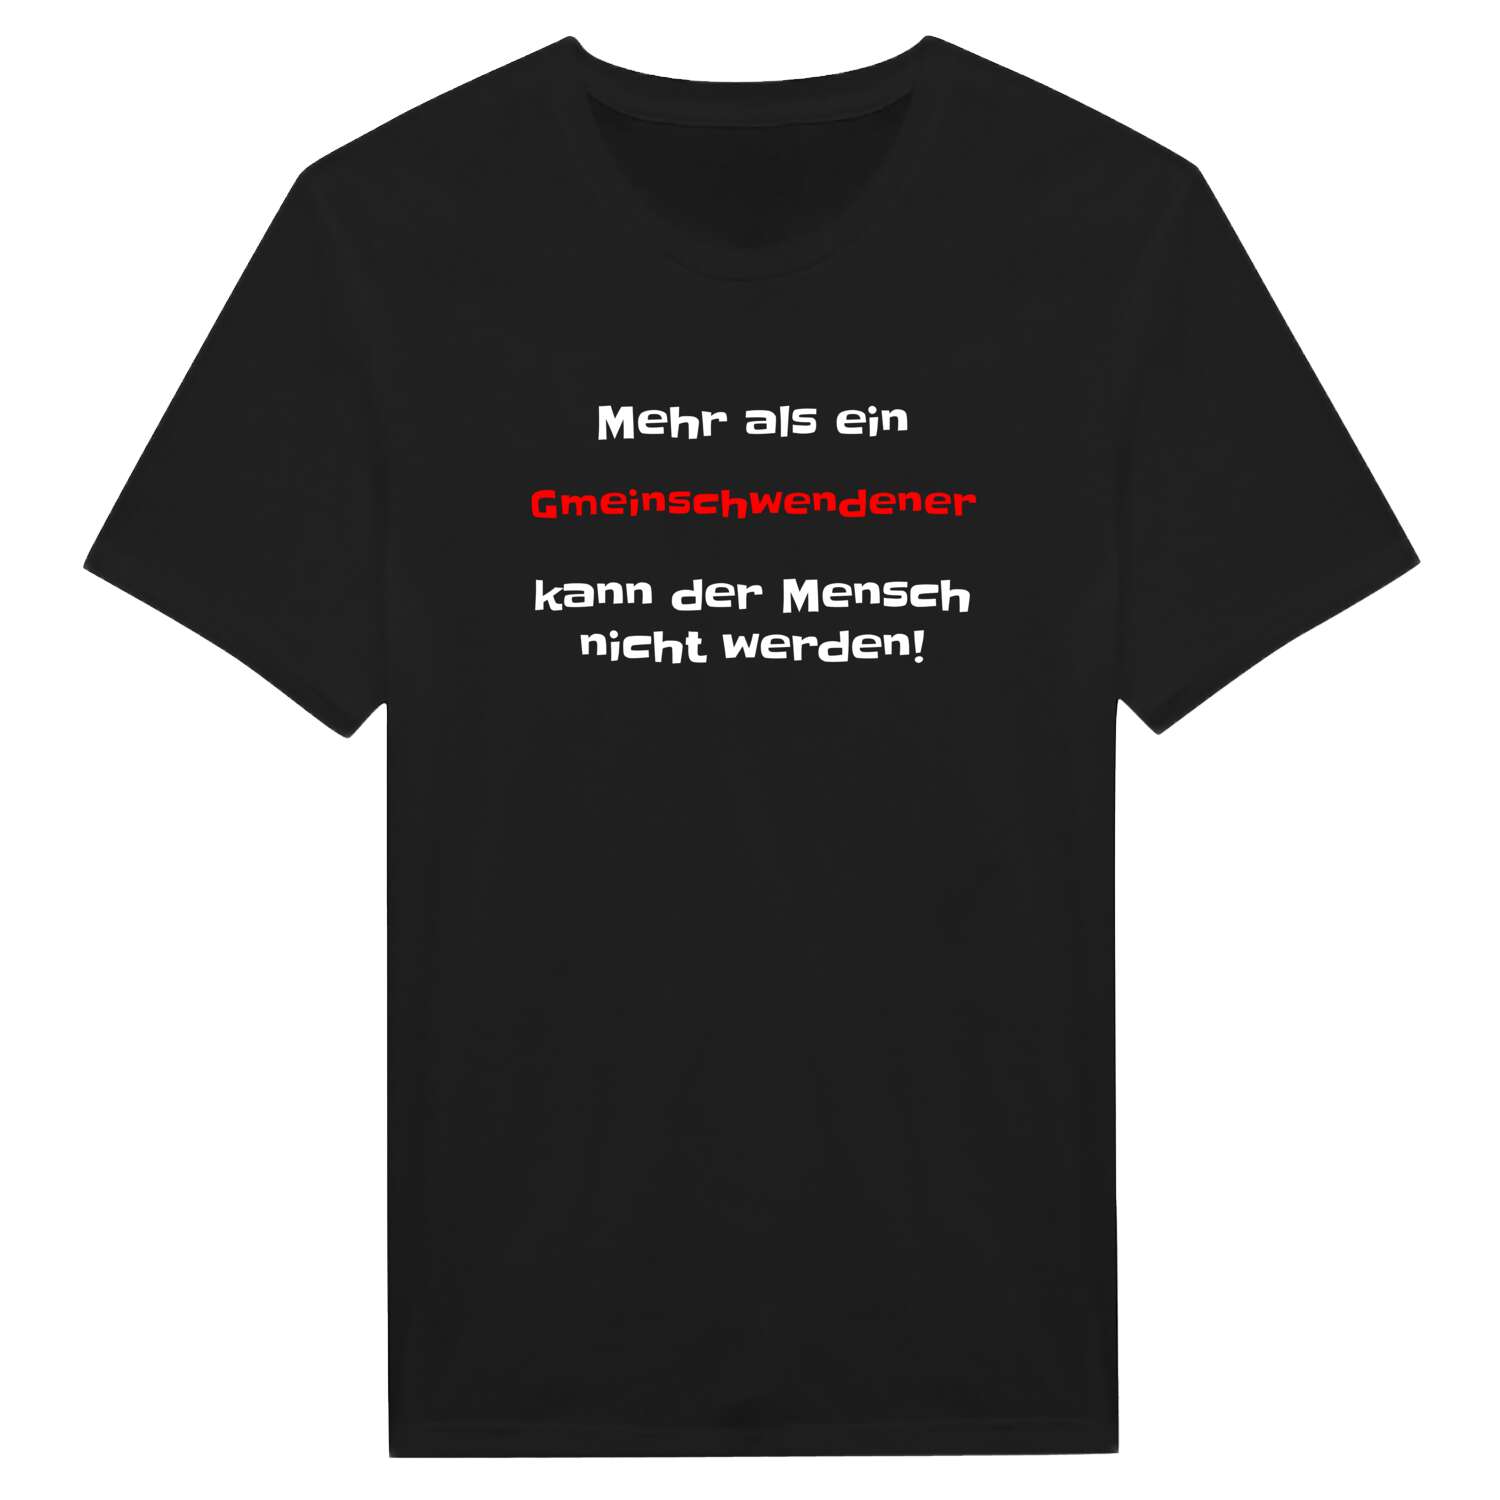 Gmeinschwenden T-Shirt »Mehr als ein«